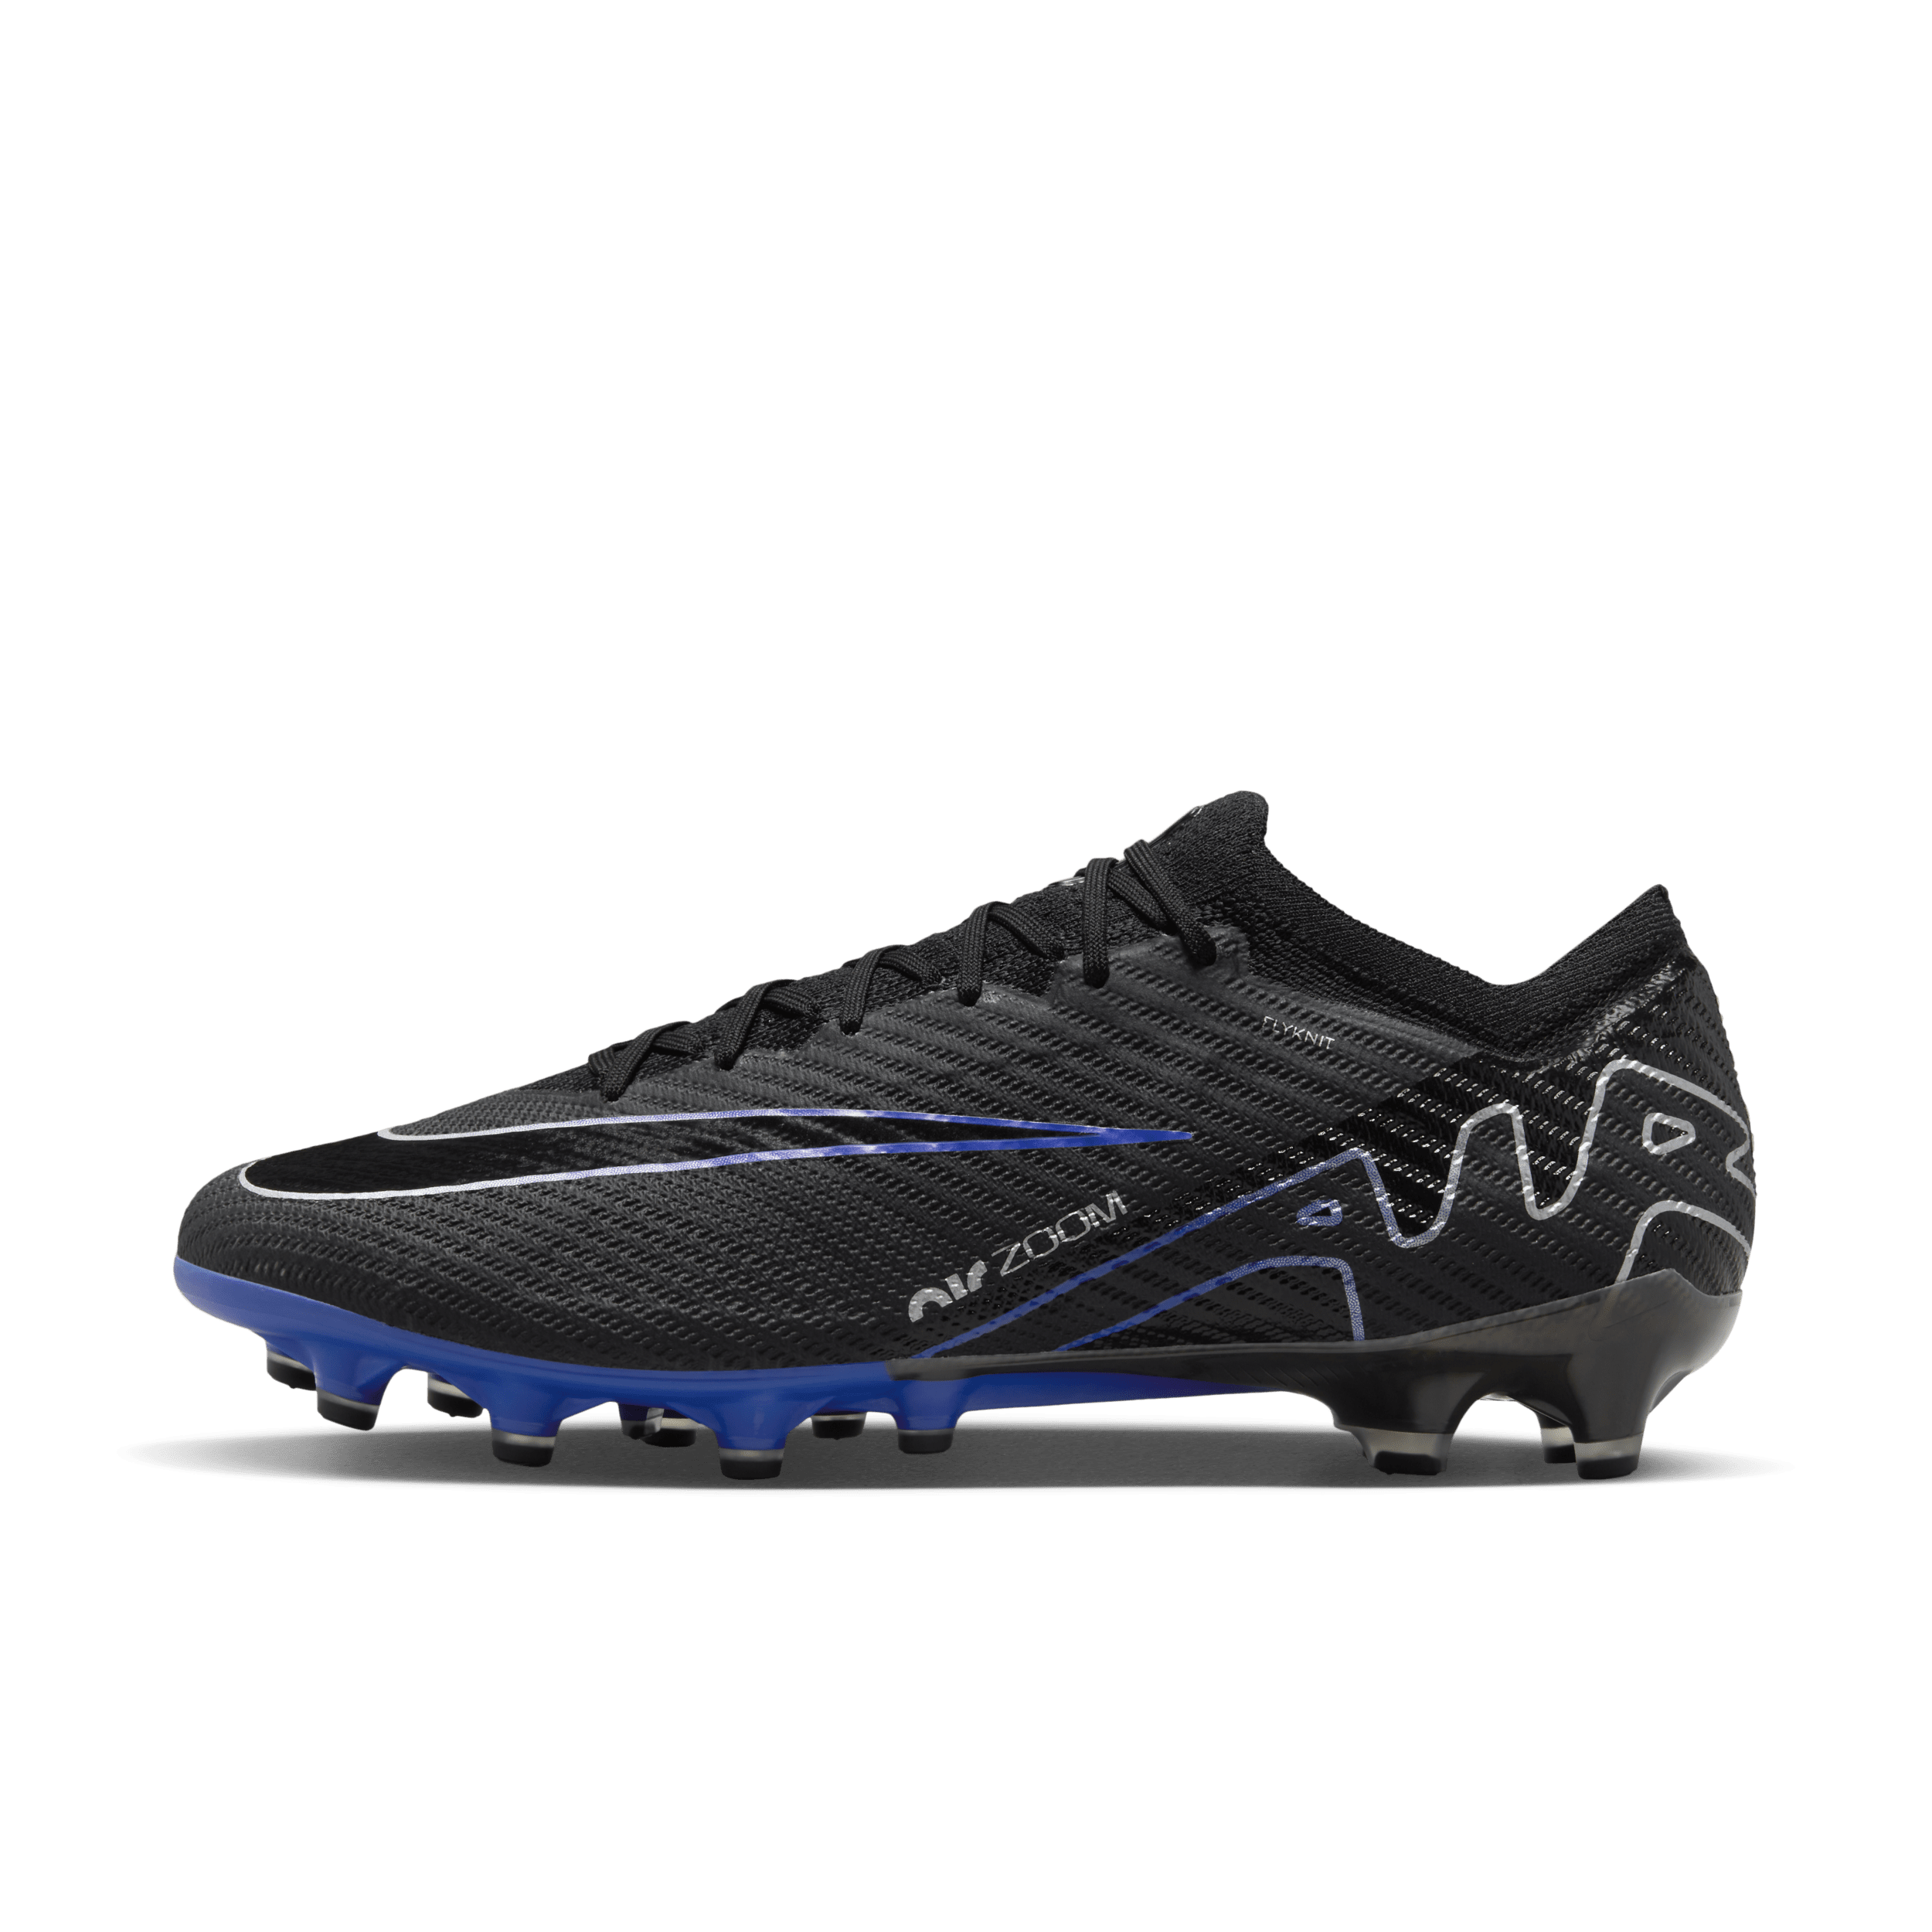 Nike Mercurial Vapor 15 Elite low-top voetbalschoen (kunstgras) - Zwart